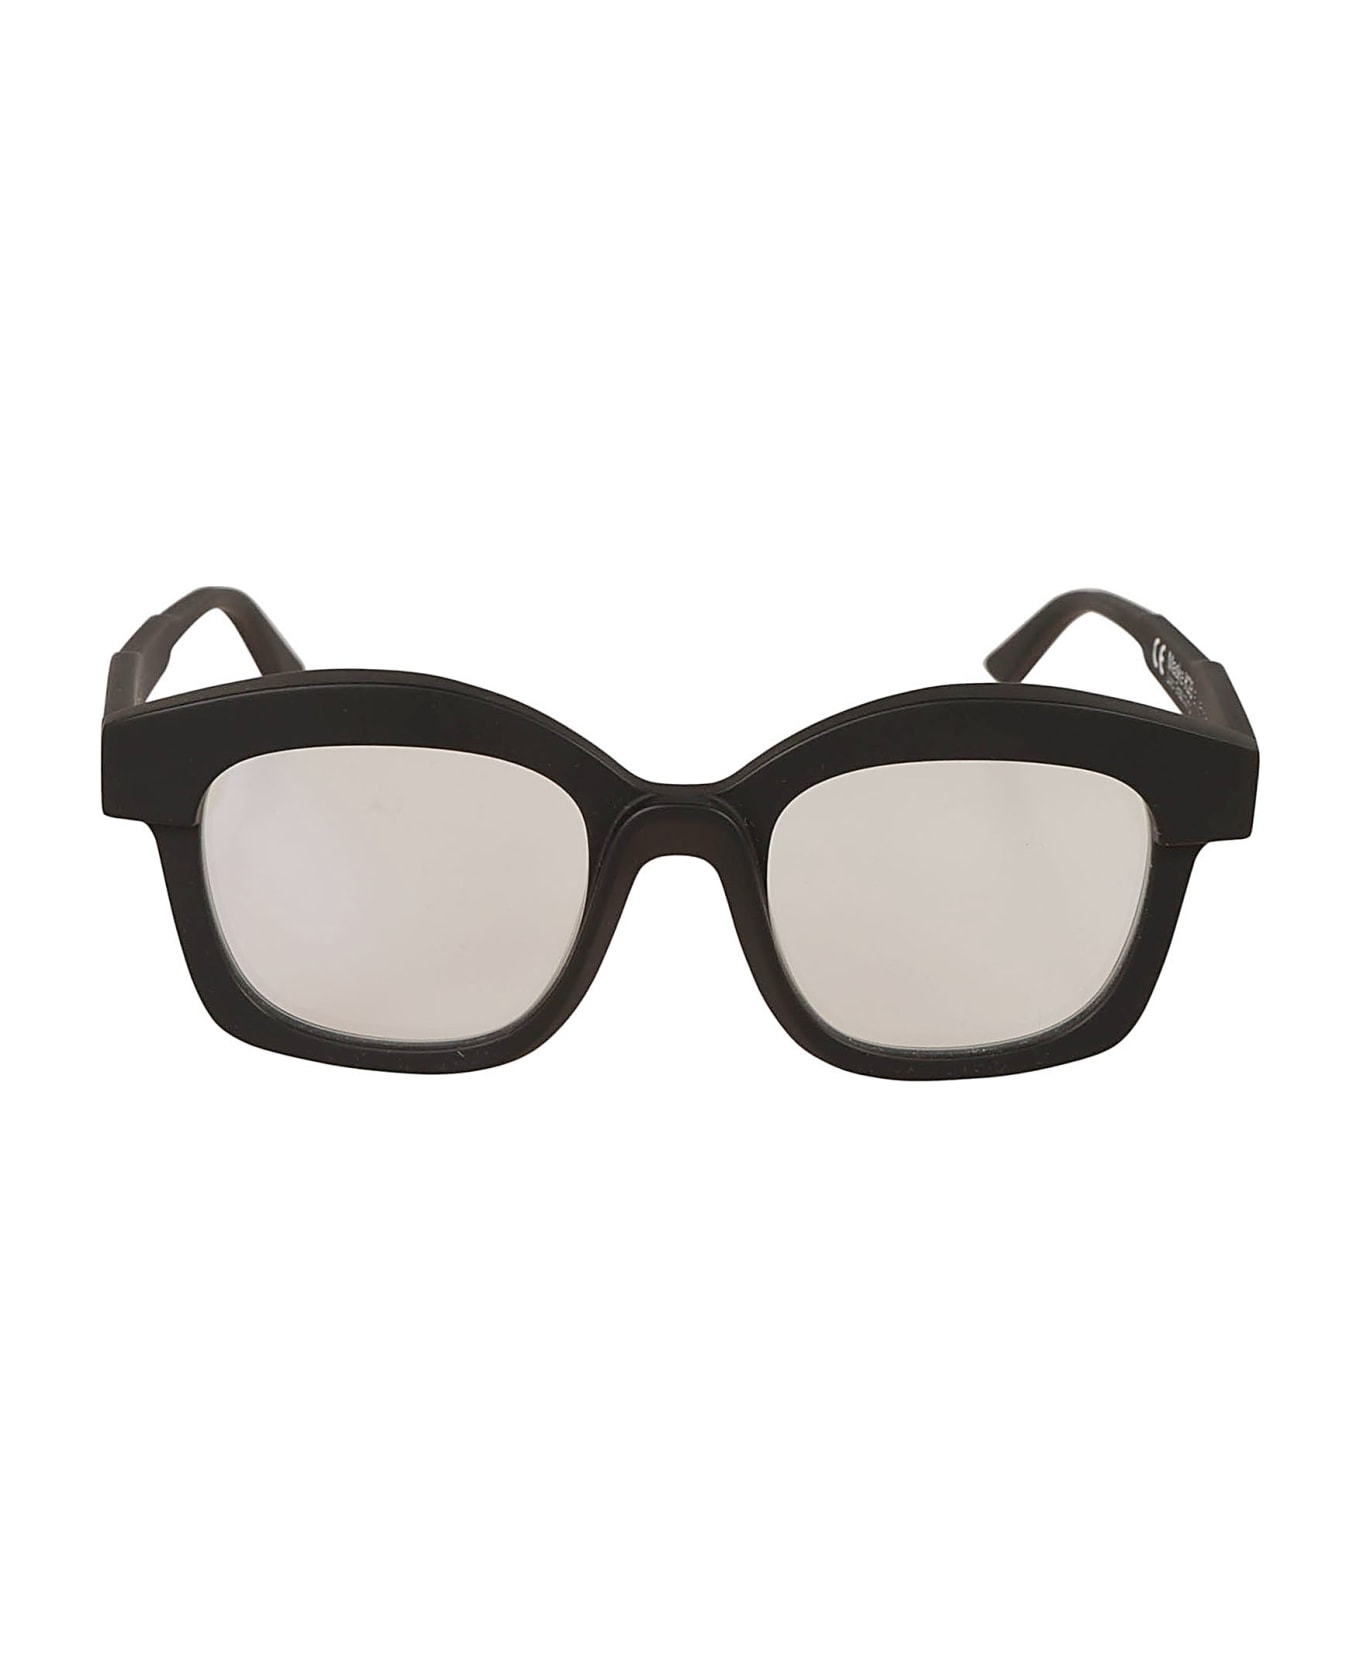 Kuboraum K28 Glasses Glasses - black